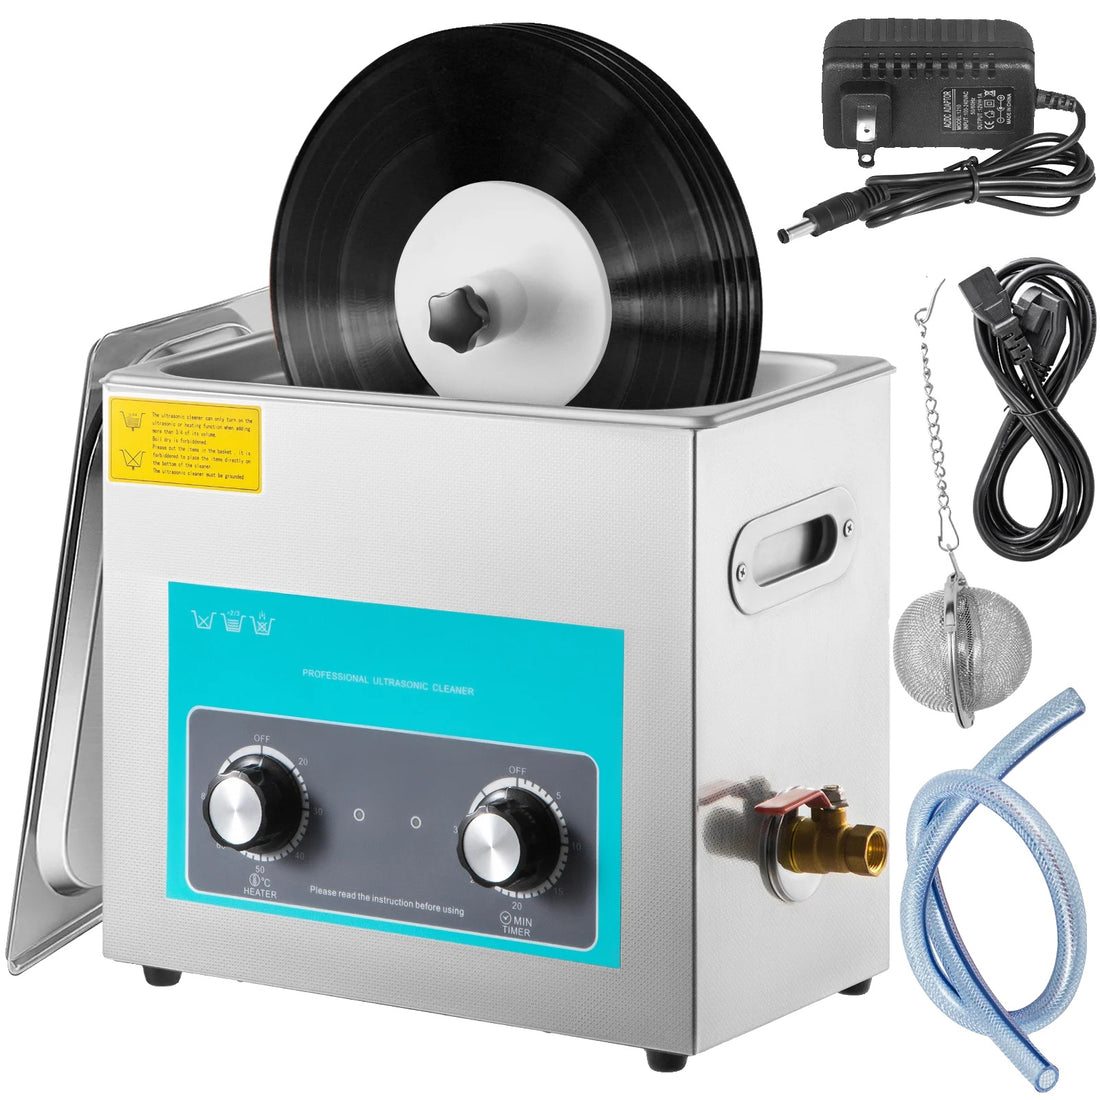 Ultrasonischer Schallplattenreiniger, 6L Fassungsvermögen, tragbar